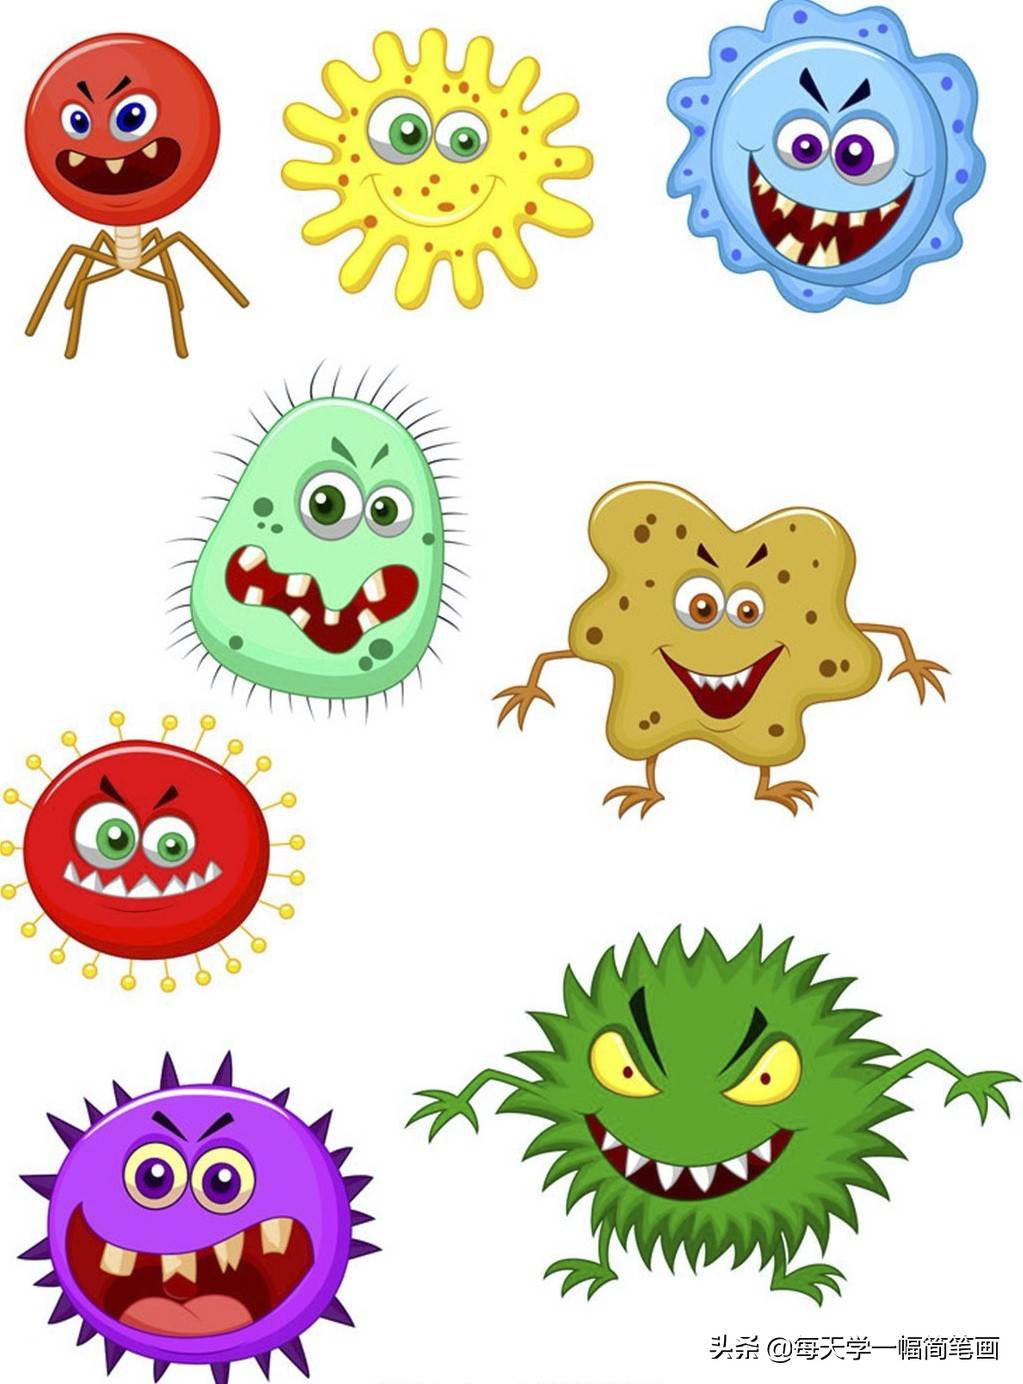 可怕的病毒图片幼儿园图片